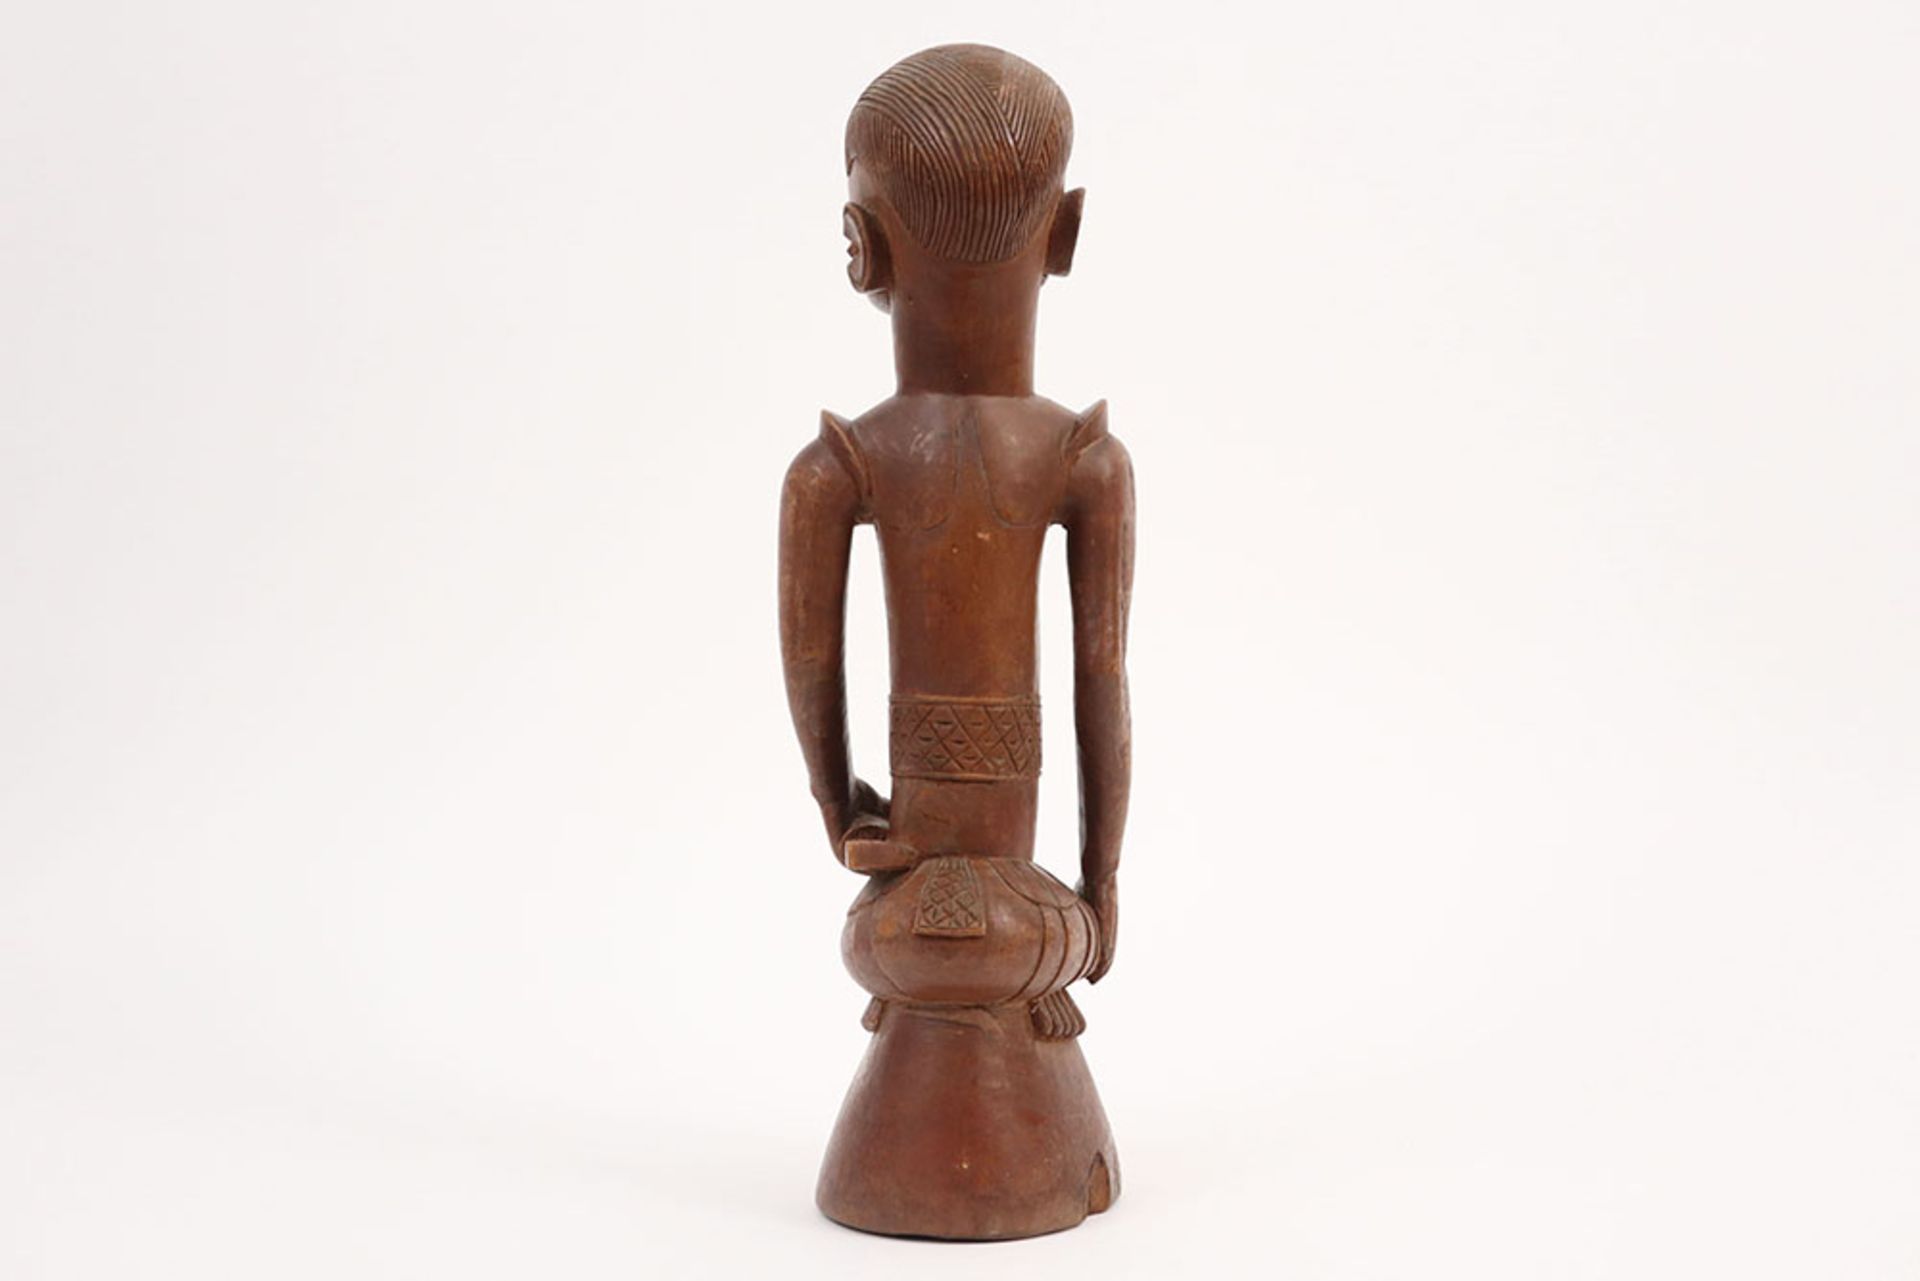 20th Cent. Congolese carver sculpture in wood || AFRIKA / KONGO - 20° EEUW sculptuur in hout met - Image 4 of 4